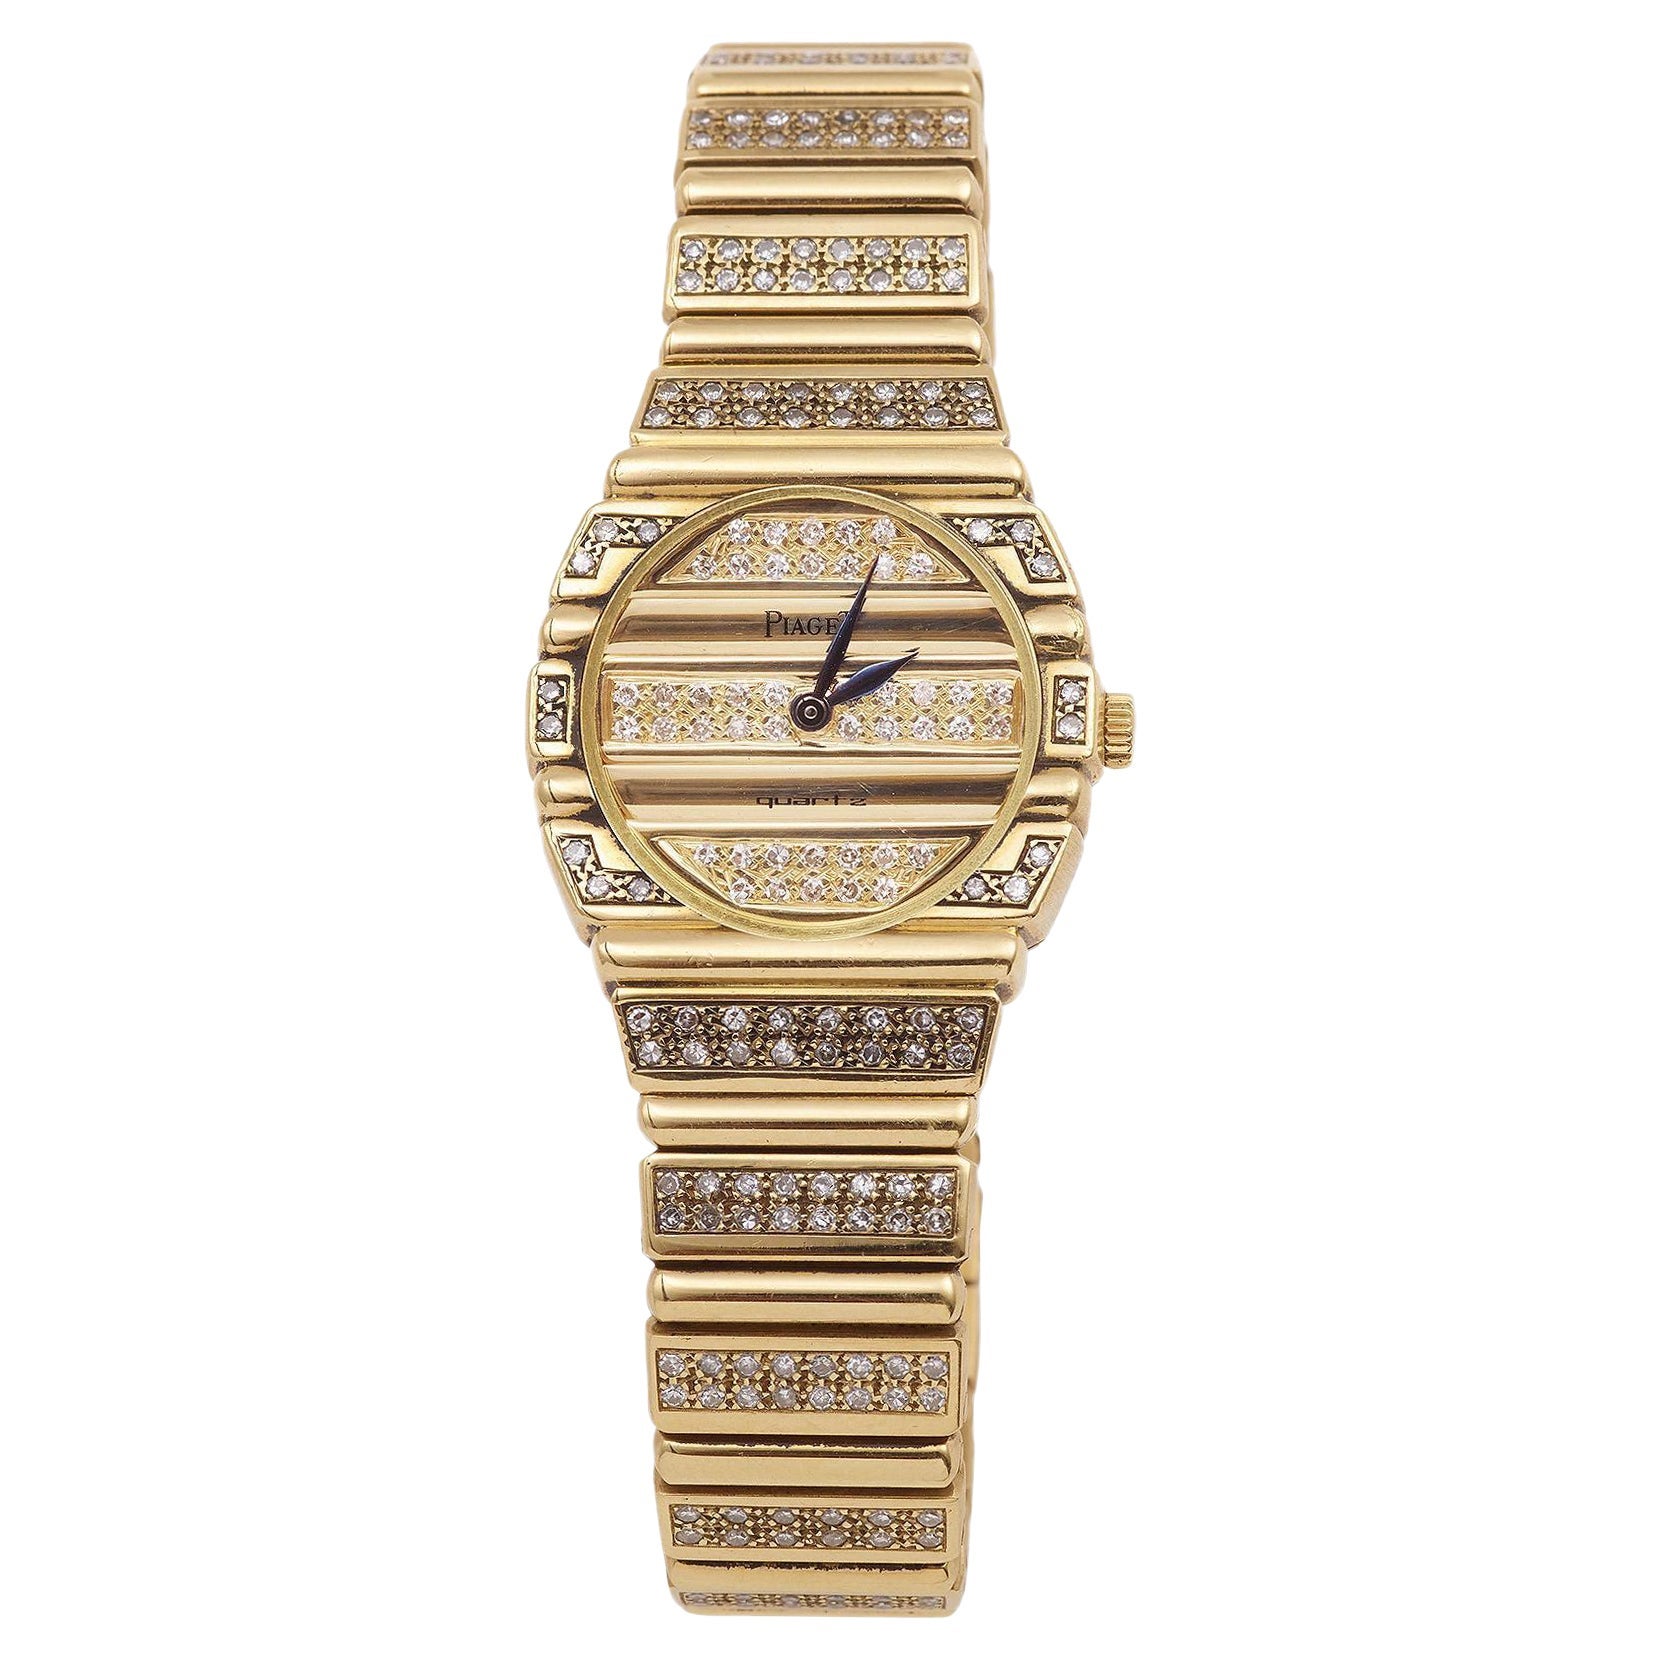 Lady Piaget: 18 Karat Gelbgold Uhr „Polo“ mit Volldiamanten